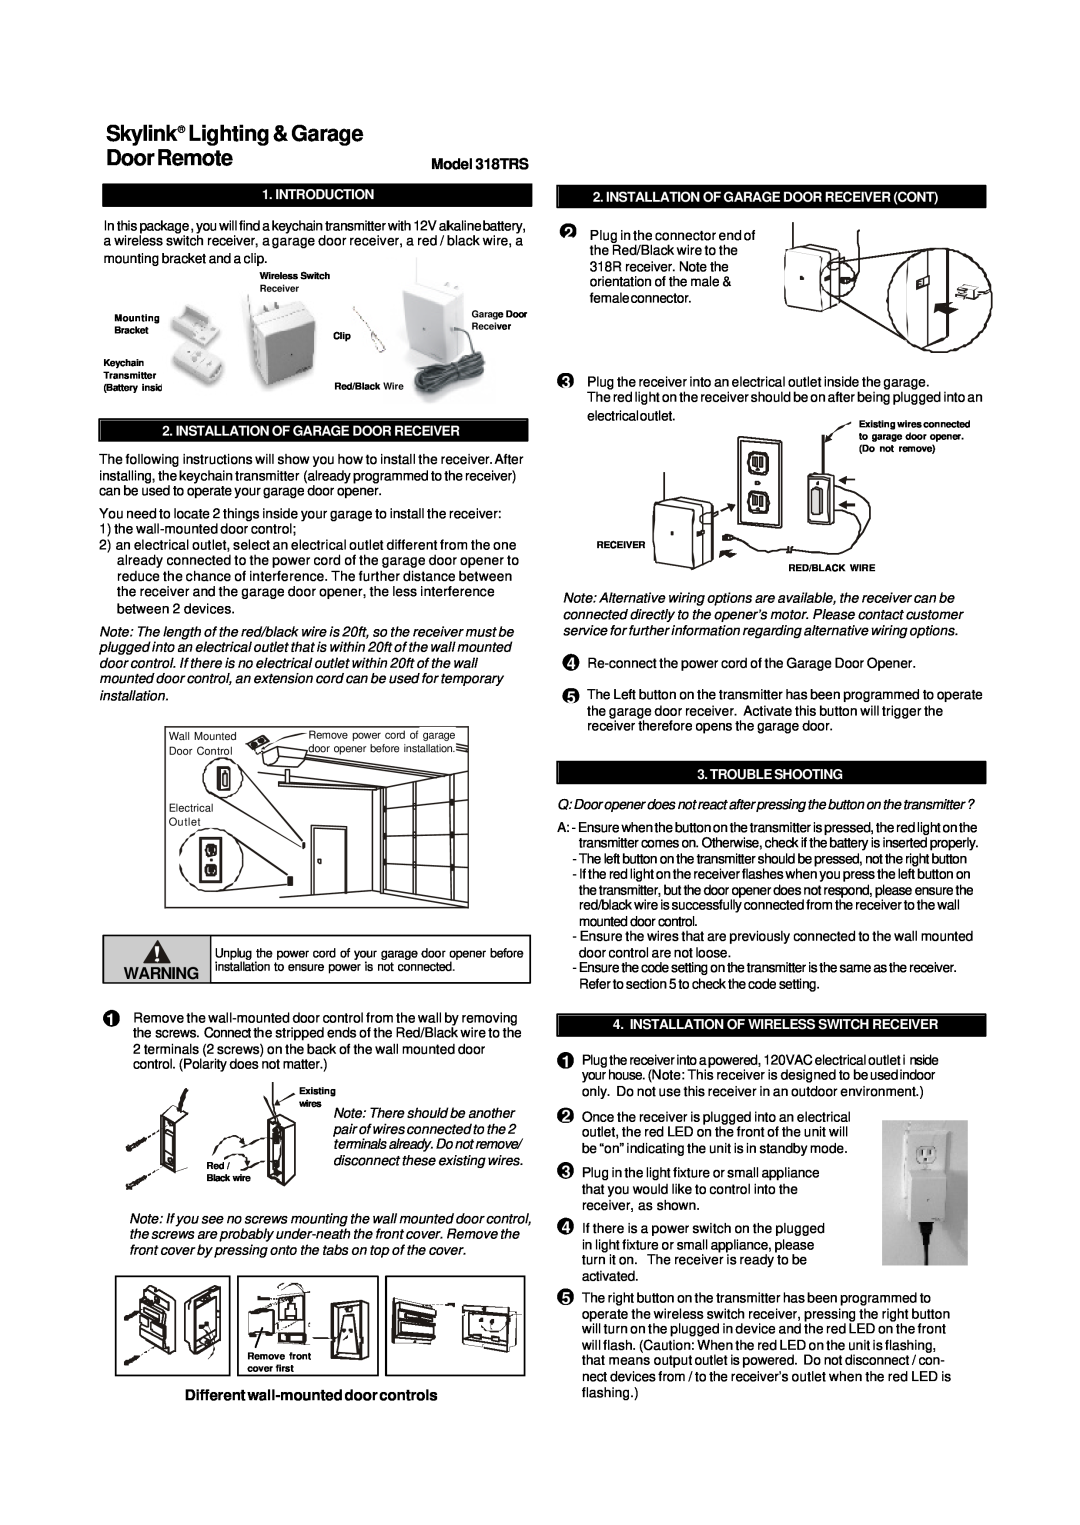 SkyLink manual Different wall-mounteddoor controls, Model 318TRS, Introduction, Installation Of Garage Door Receiver 